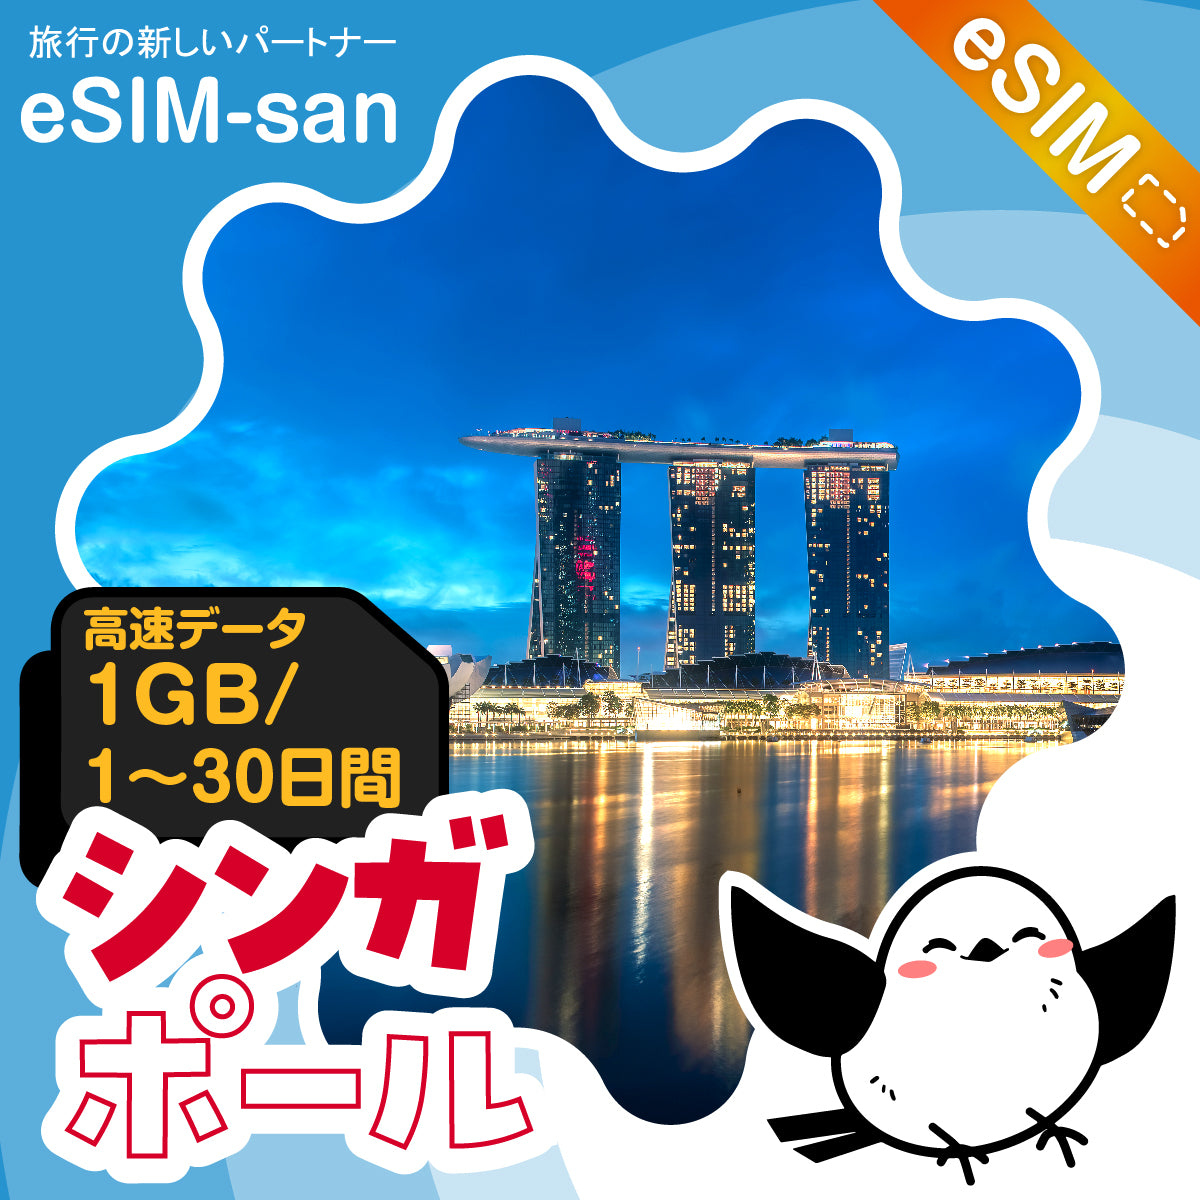 シンガポールeSIMの1GB/dayプラン画像_eSIM-san